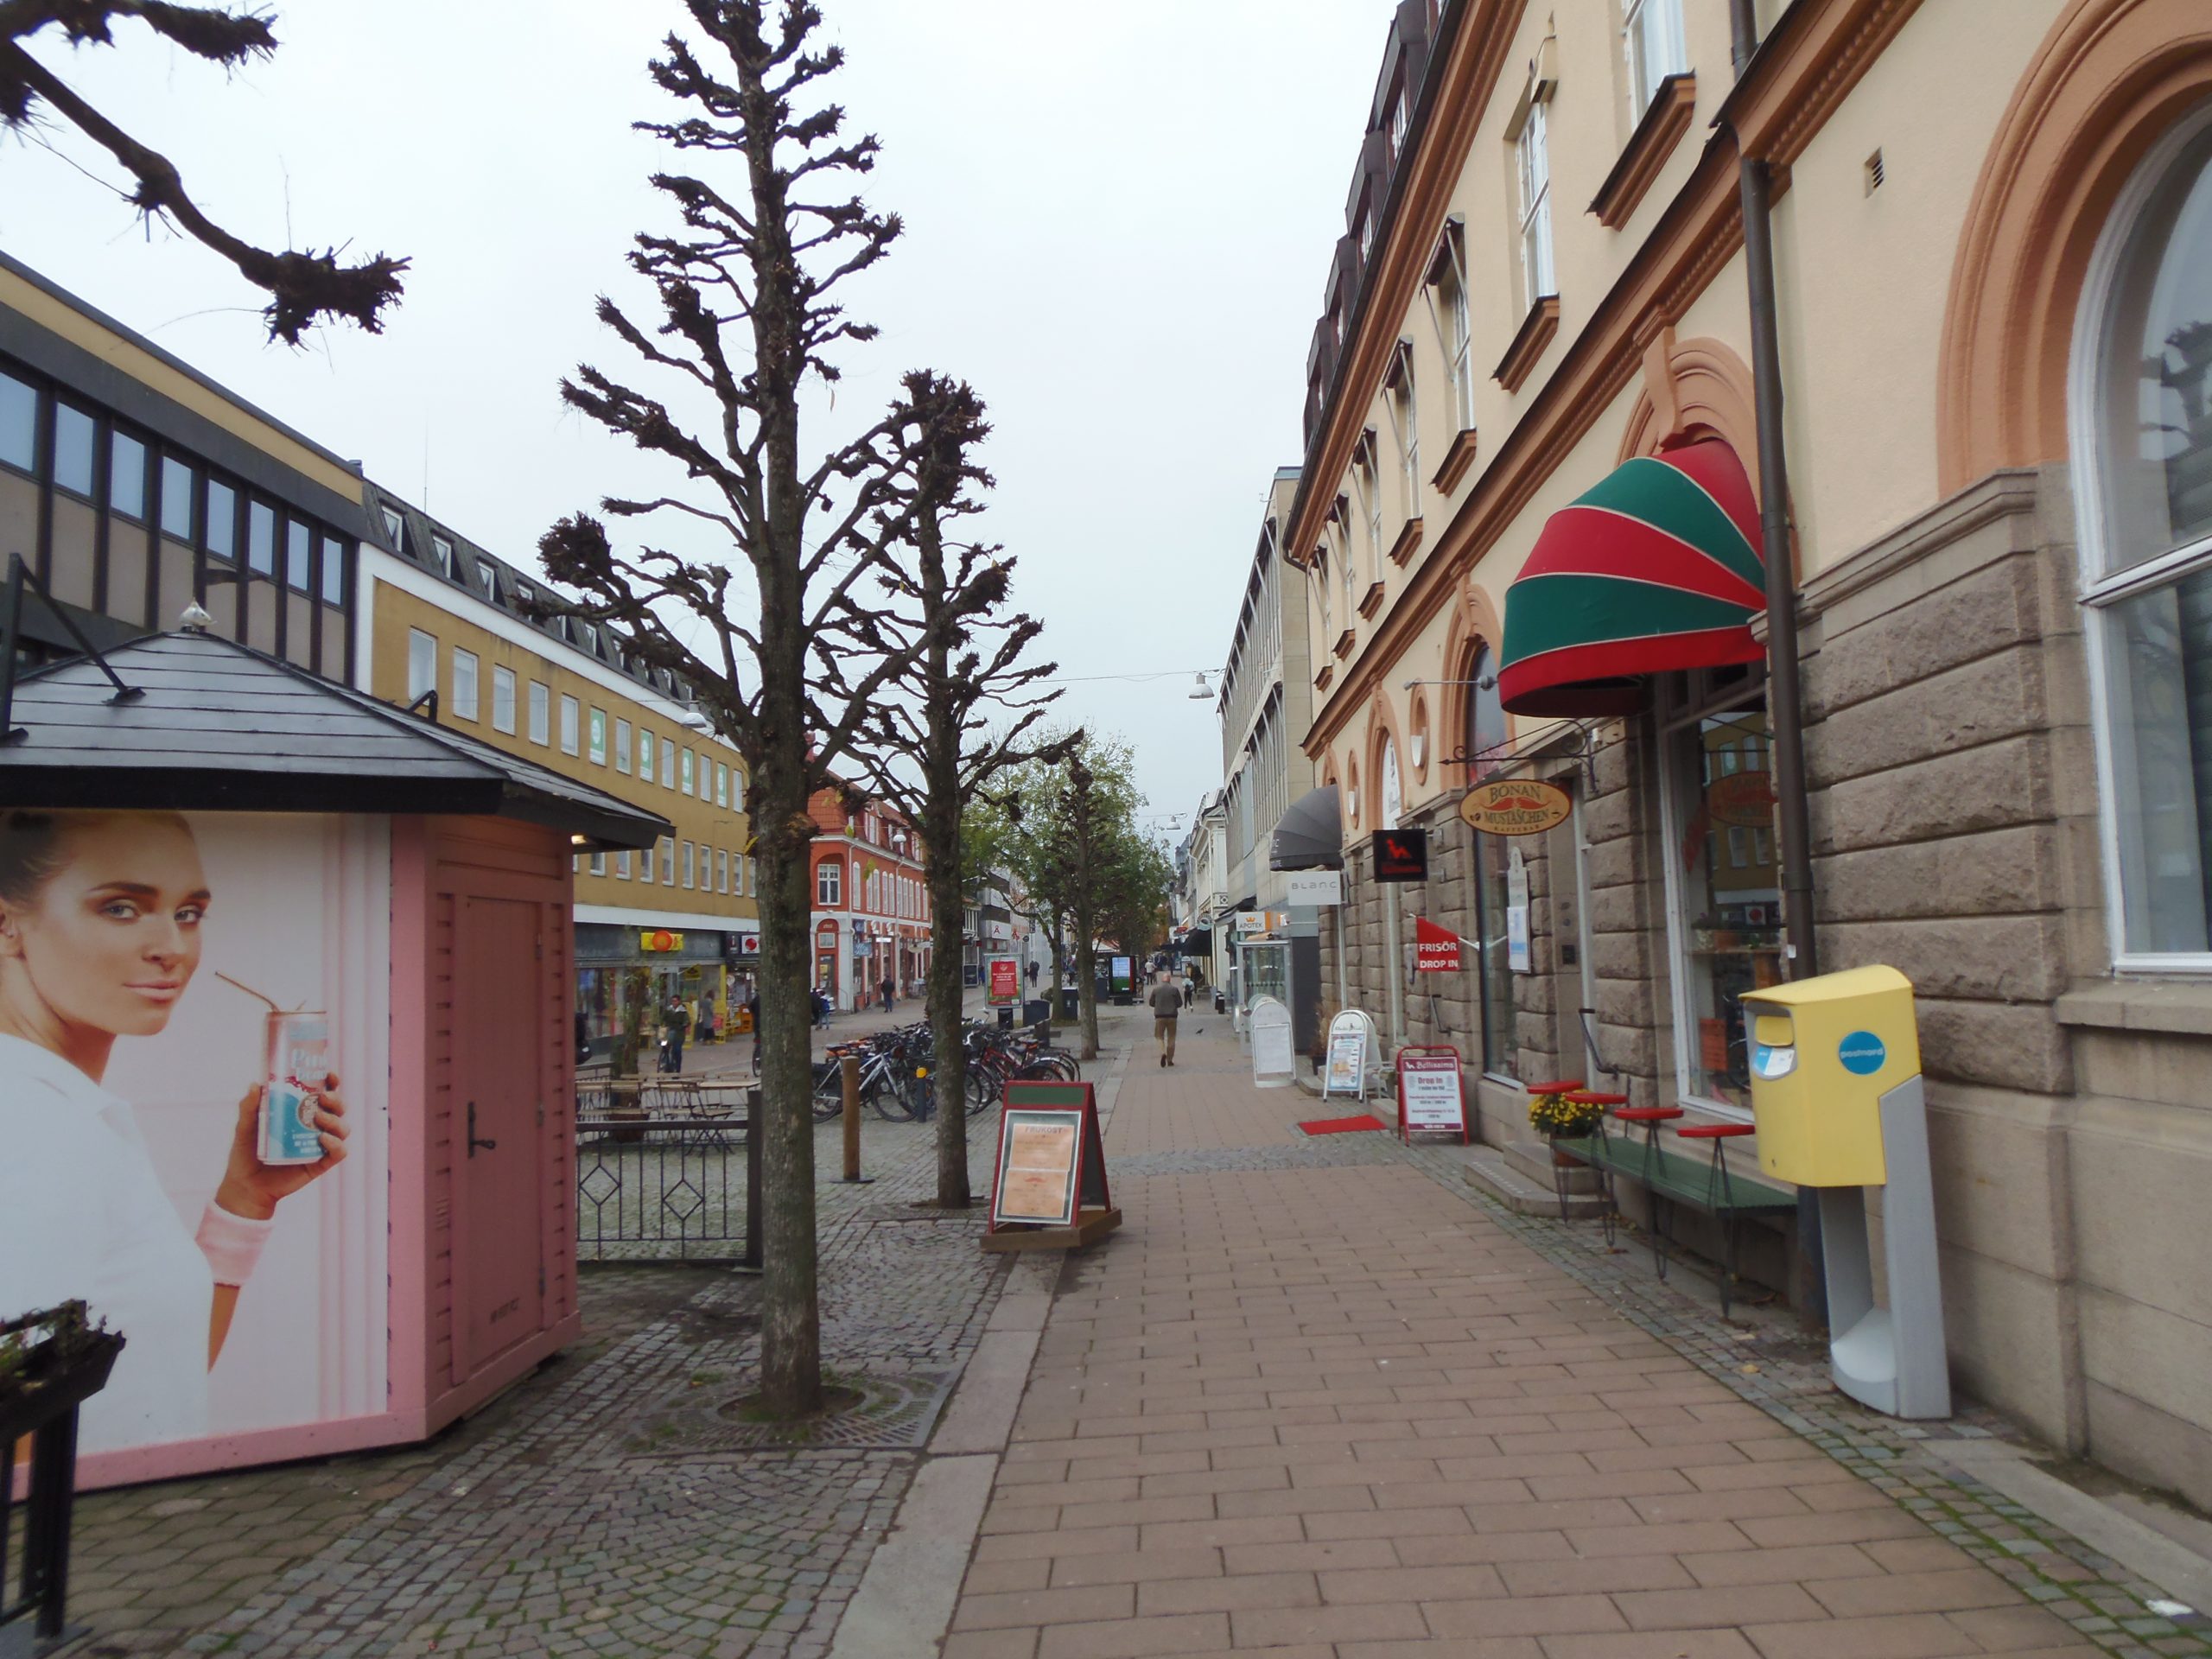 Innenstadt von Växjö. Besuch aus Deutschland hat jedes Mal die saubere Stadt bewundert. Nach Karlsruhe sind wir die letzten Jahre überhaupt nicht mehr gerne gegangen. (Überfremdungsgefühl, Unsicherheit usw.)